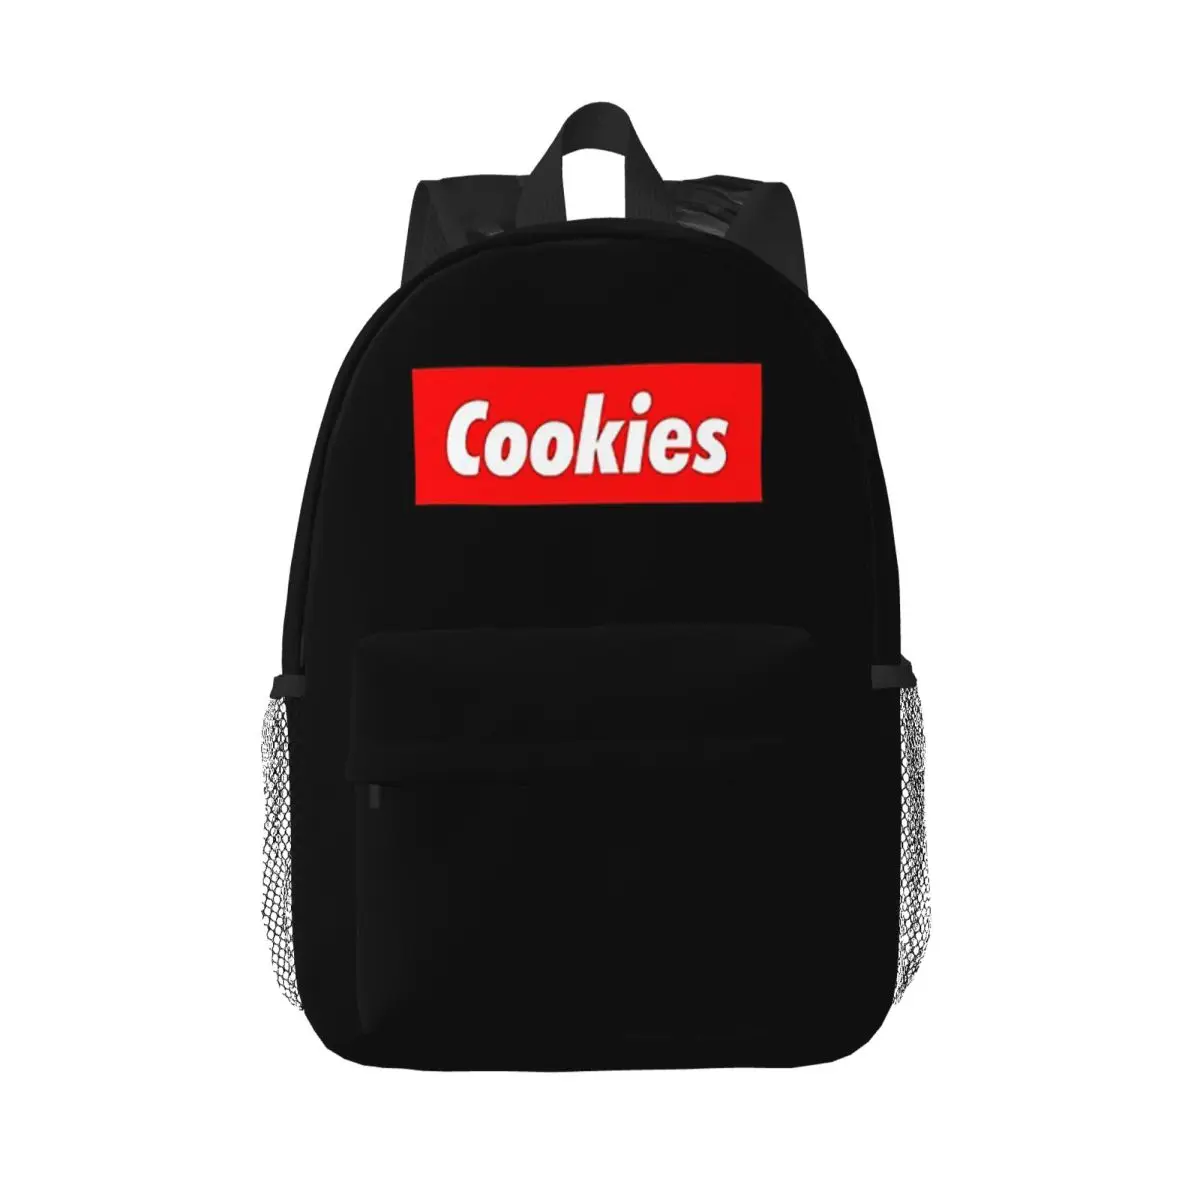 

Печенье, лучший верх и самый популярный кондитерский десерт, женская сумка для книг, школьная сумка, дорожный рюкзак, сумка на плечо